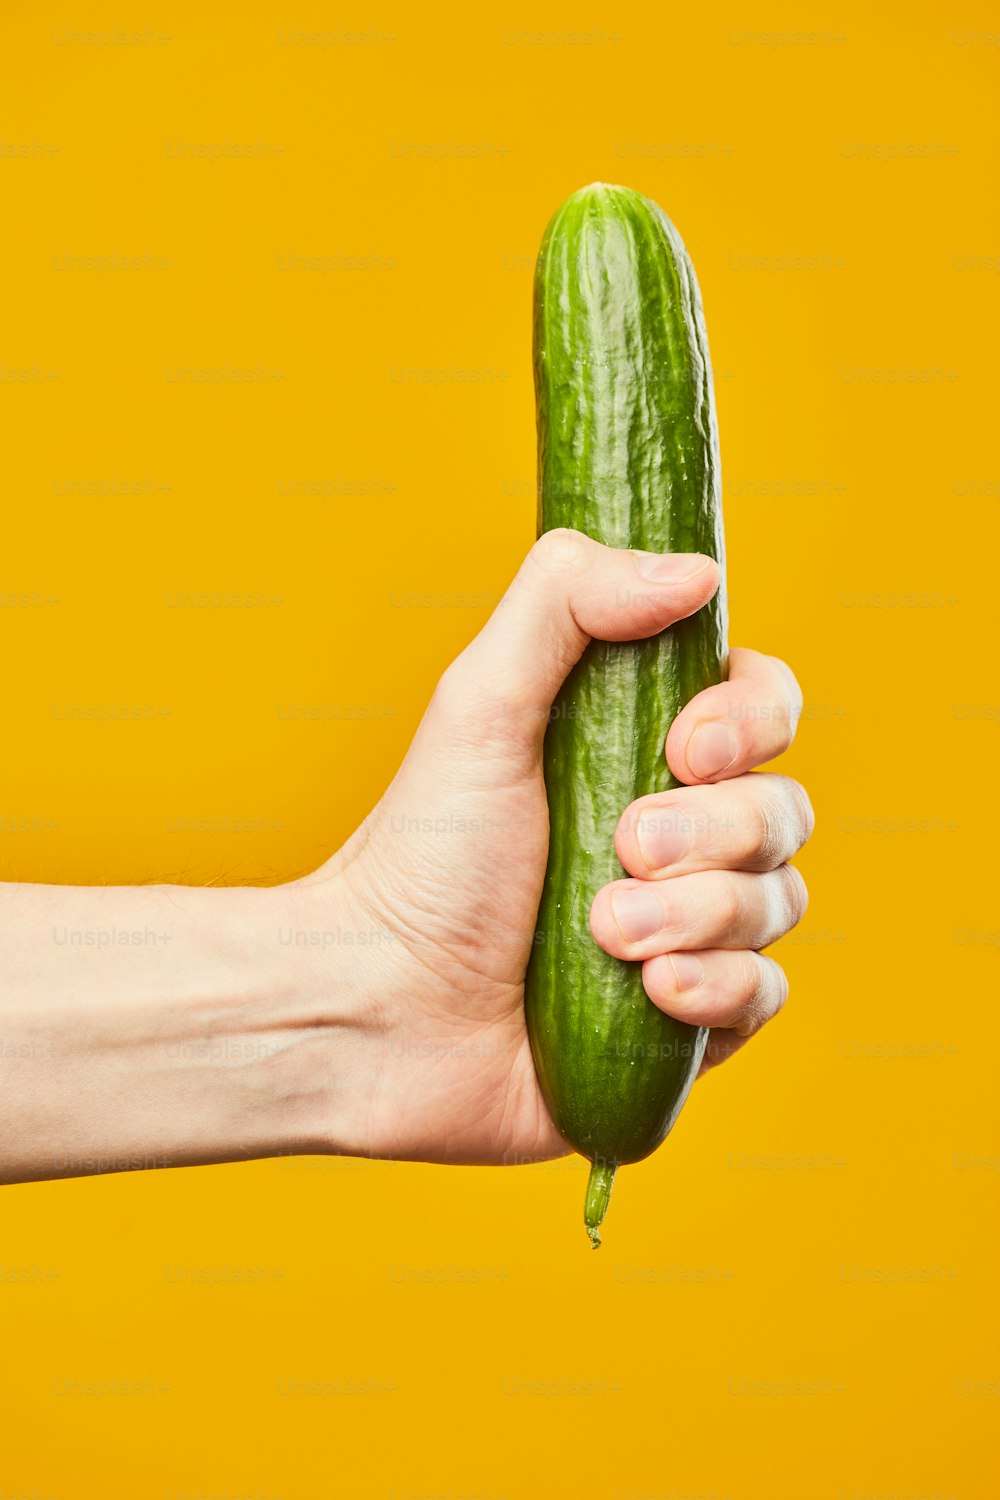 Cliché vibrant de la main tenant le concombre sur fond jaune concept de sexe sans risque